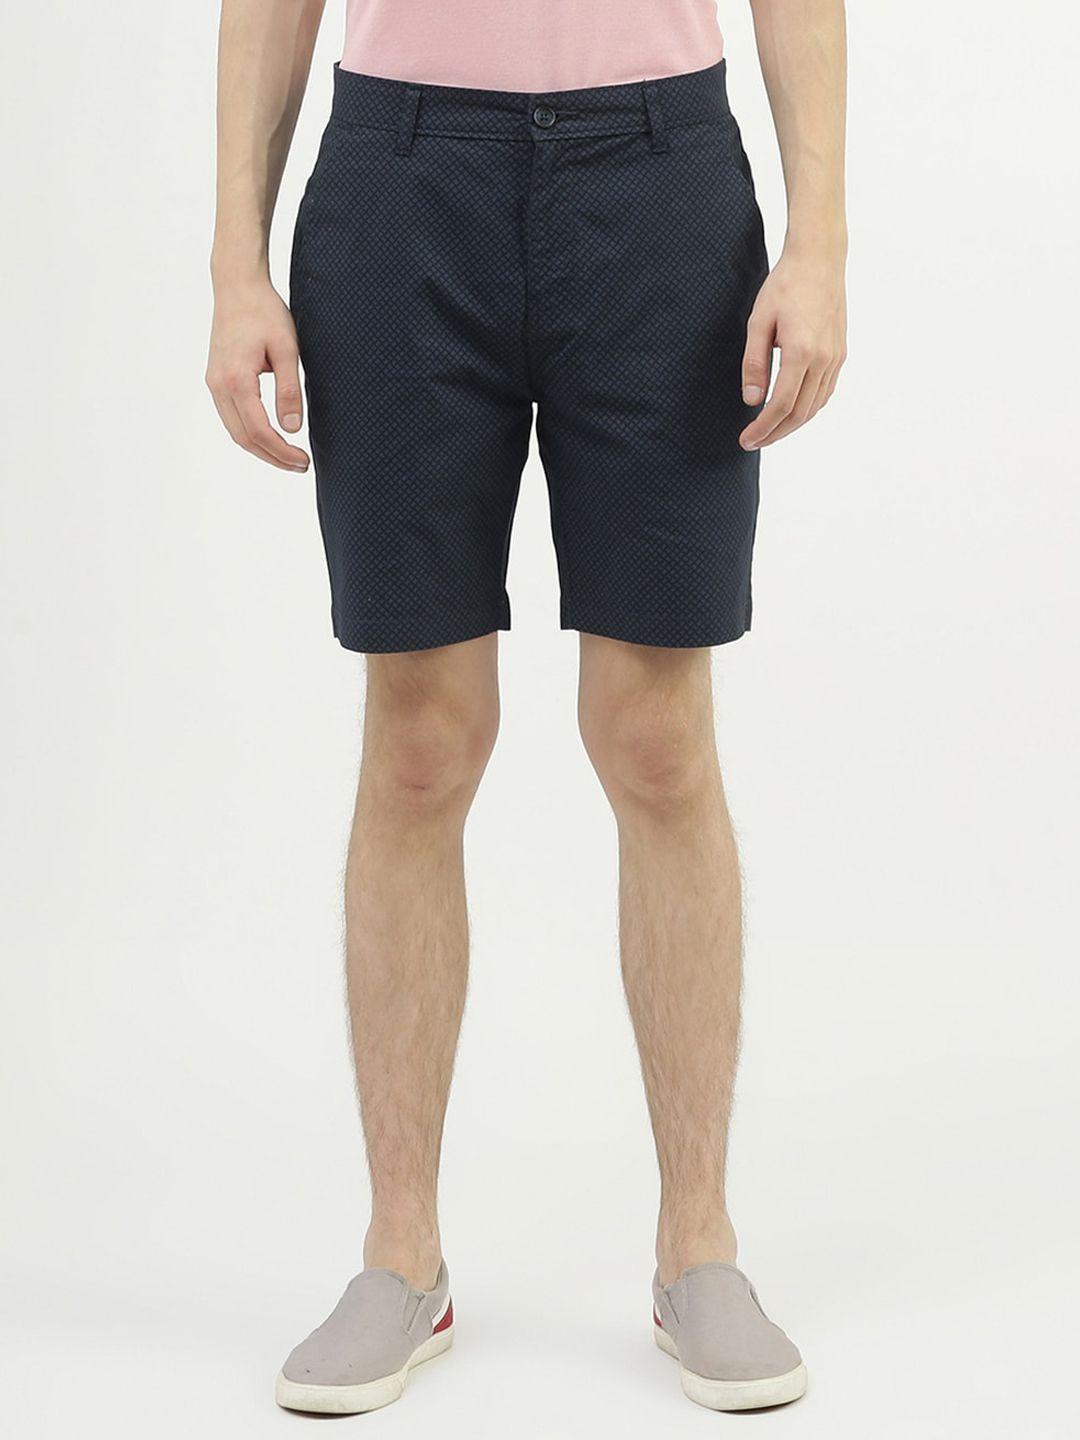 united colors of benetton men cotton slim fit shorts